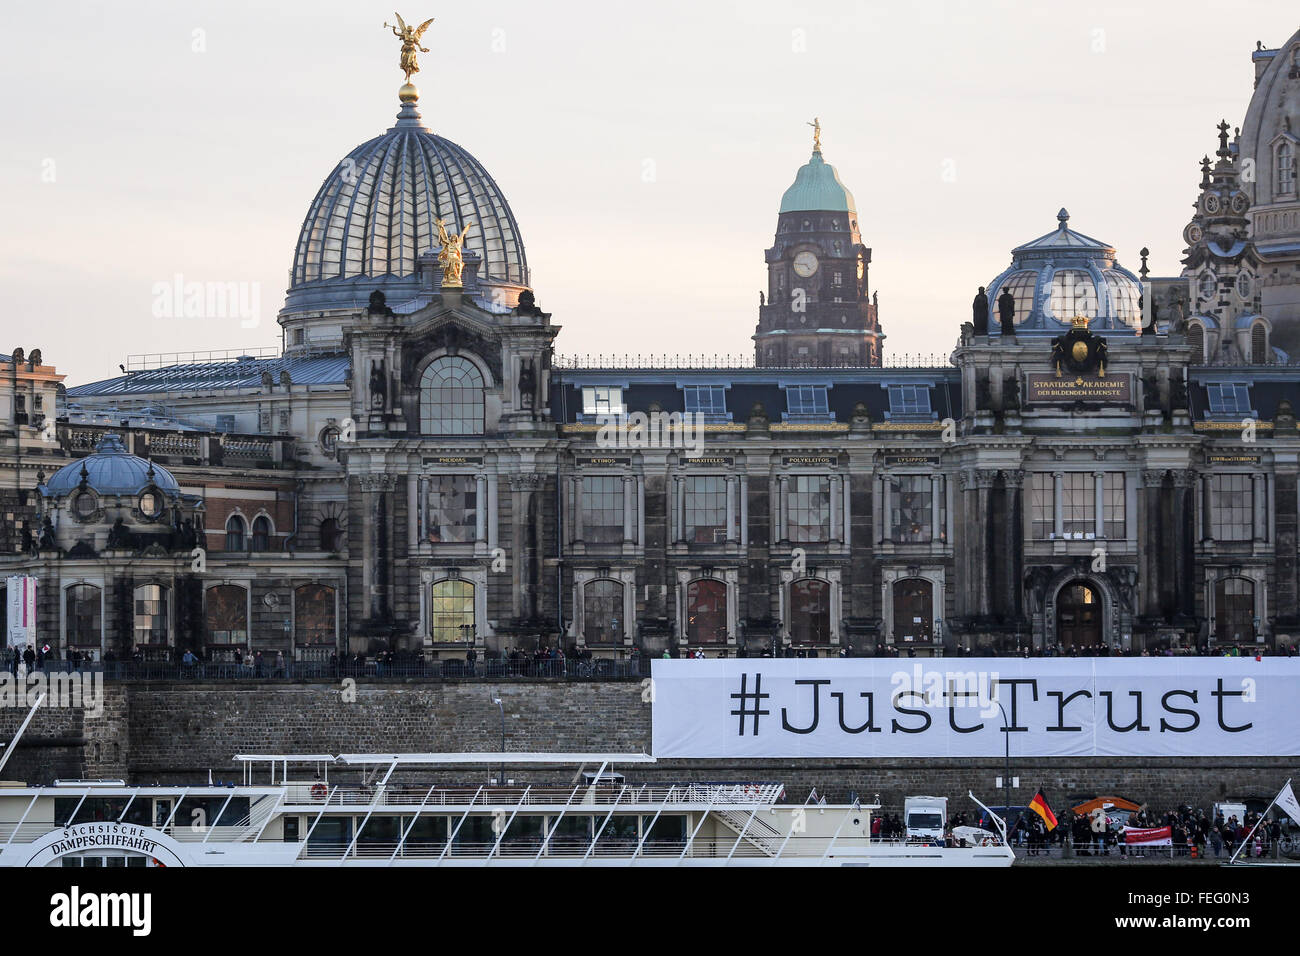 (160207) -- Dresde, 7 février 2016 (Xinhua) -- contre-manifestants contre un rassemblement du mouvement anti-Islam PEGIDA afficher une bannière disant 'trust' juste pendant un rassemblement à Dresde, Allemagne, le 6 février 2016. Des milliers de partisans du mouvement anti-Islam le PEGIDA ont manifesté contre l'admission des réfugiés le samedi après-midi, à l'est de la ville allemande de Dresde. Entre-temps, des milliers de contre-manifestants se sont rassemblés samedi matin à Dresde, portant des pancartes avec des slogans tel que "Pas de place pour des Nazis". De nombreux policiers étaient sur place pour empêcher des affrontements entre l'PEGIDA et leur compter Banque D'Images